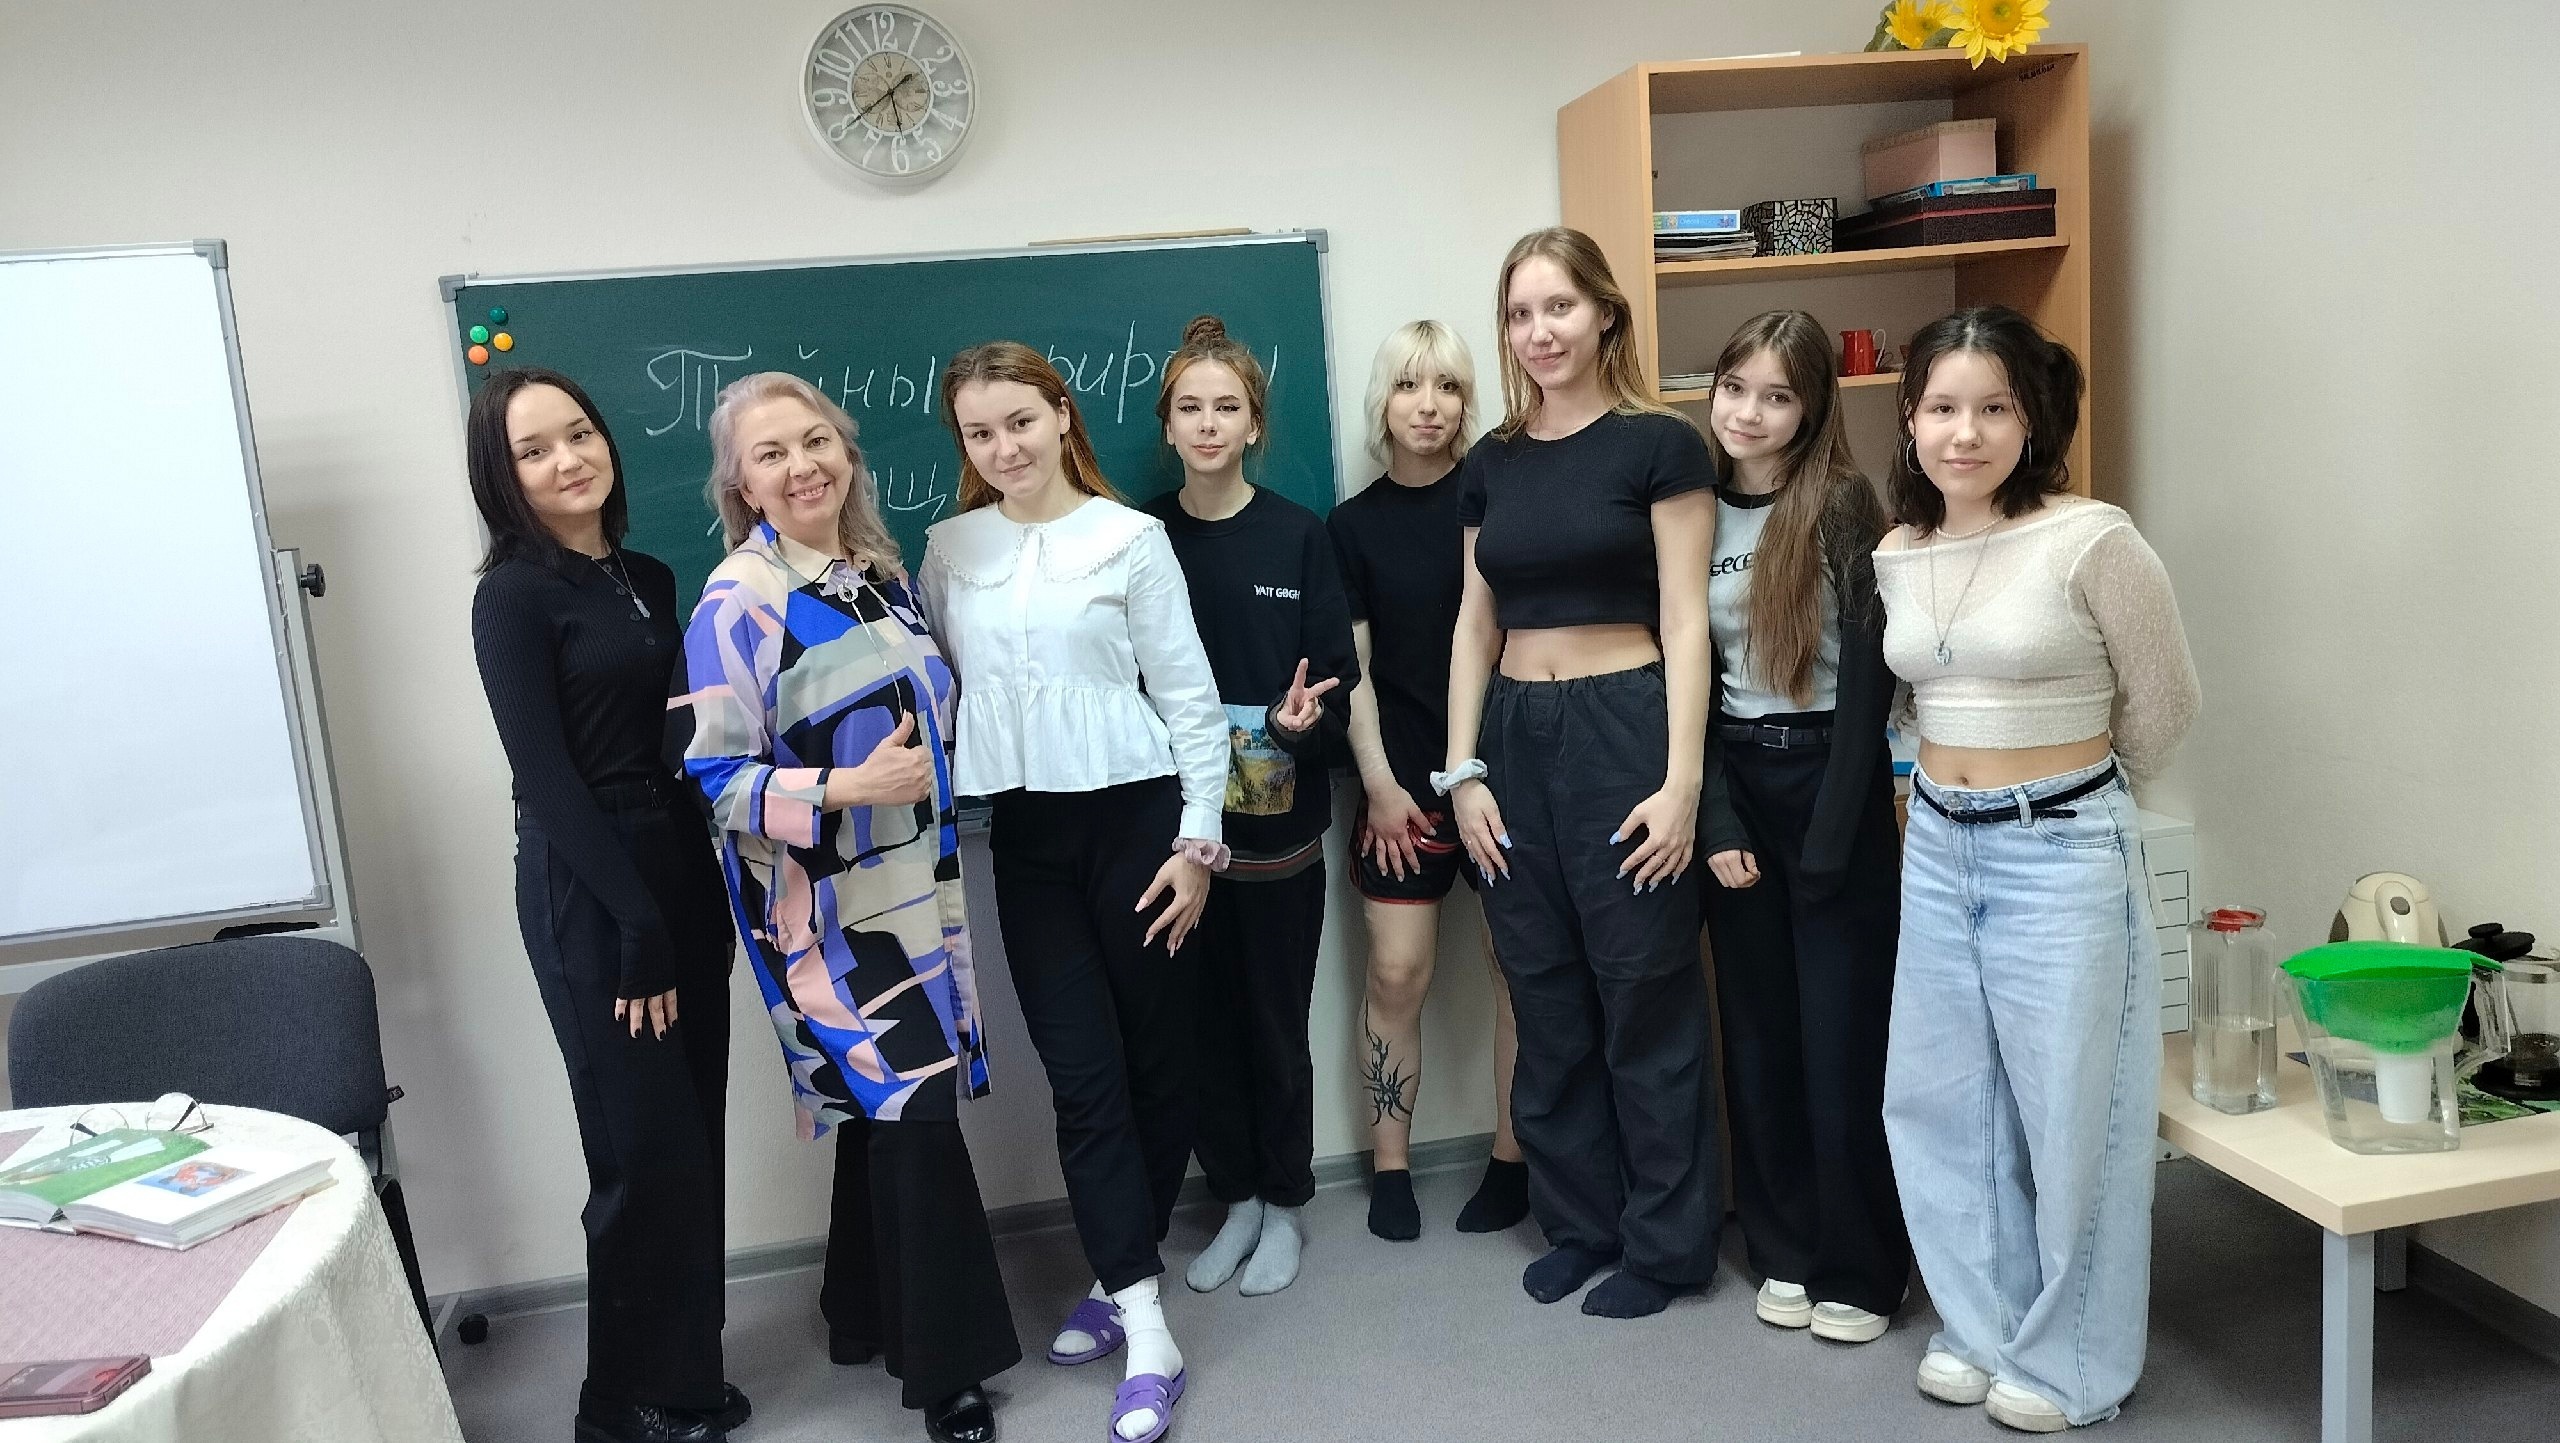 Психолог молодёжного центра "Вираж" Тарасова Гульнара провела лекторий для девушек-подростков «Тайны природы женщины»